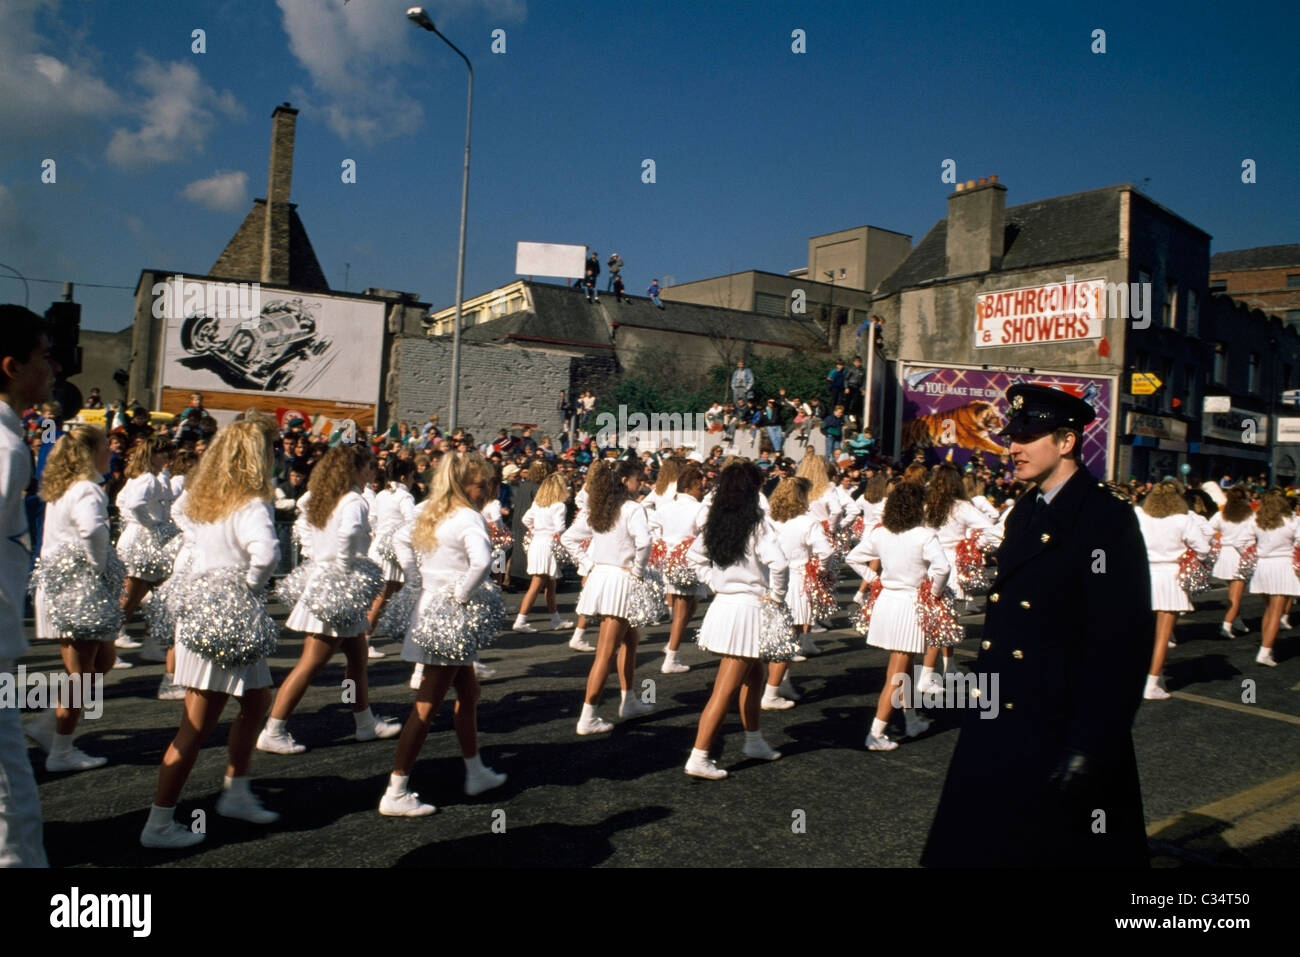 St. Patrick's Day Parade, Dublin City, County Dublin, Ireland Stock Photo